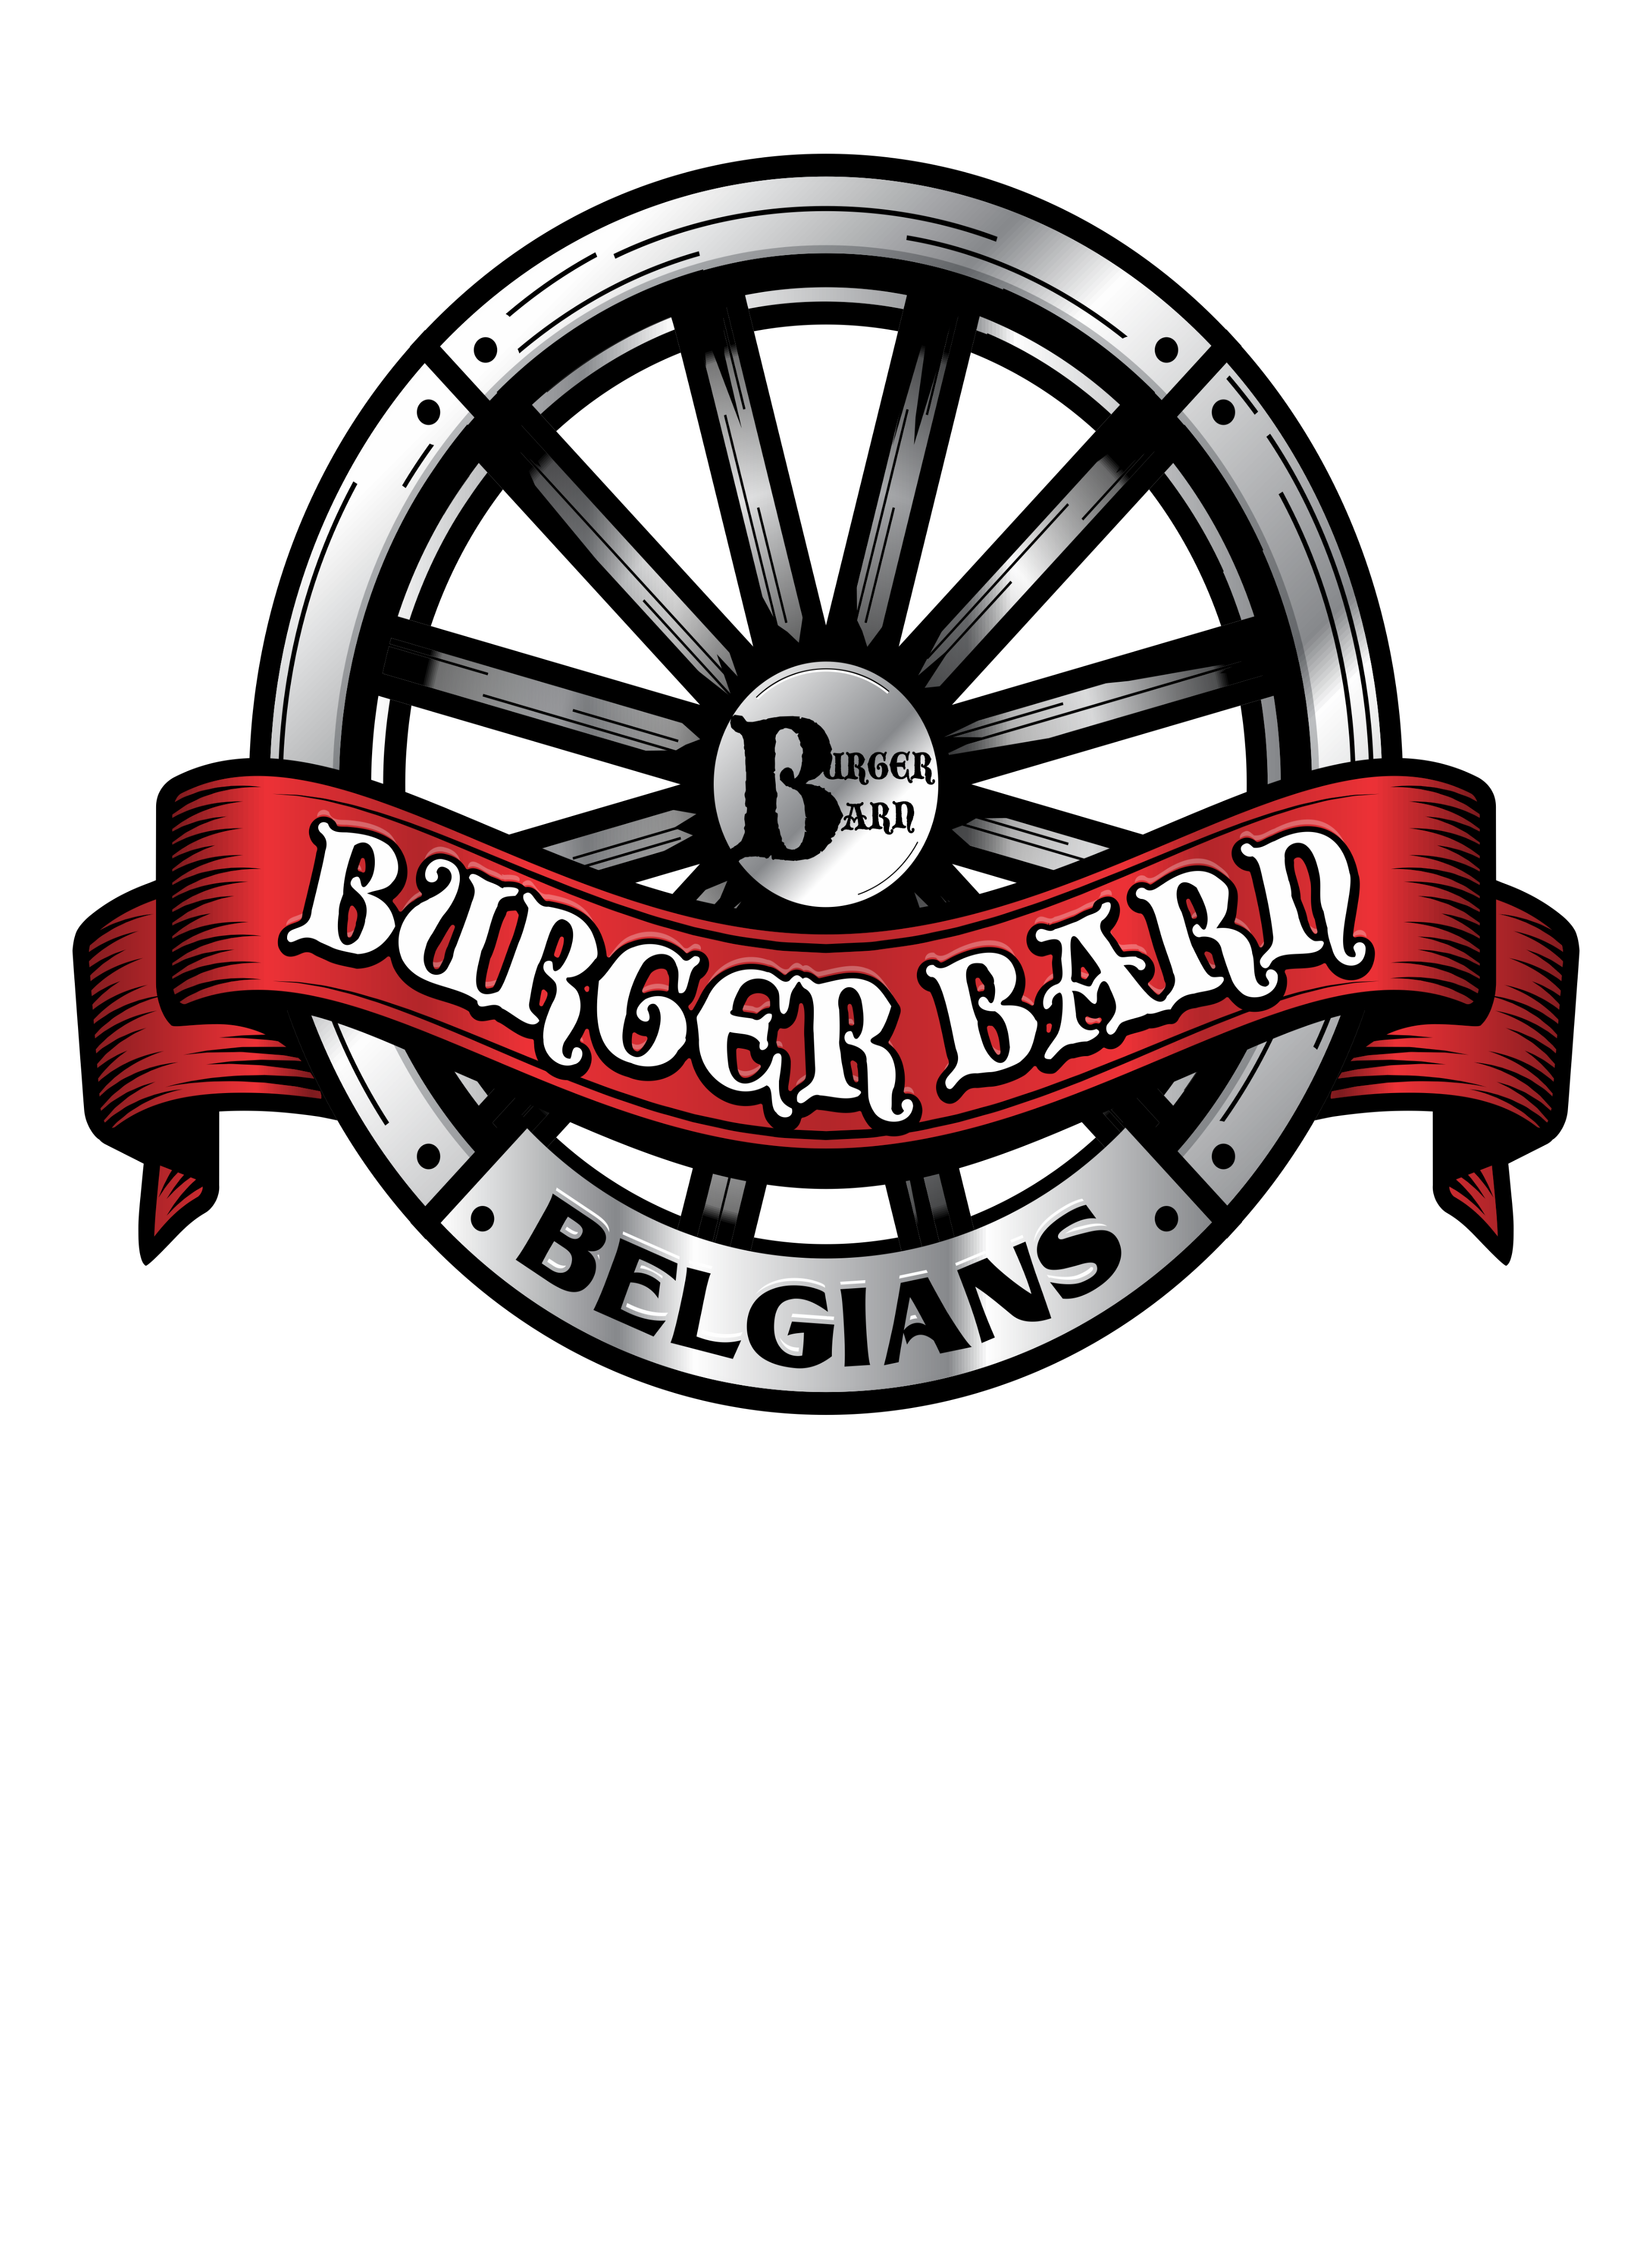 Burger Barn Belgians Men’s T-Shirt 2XL-4XL